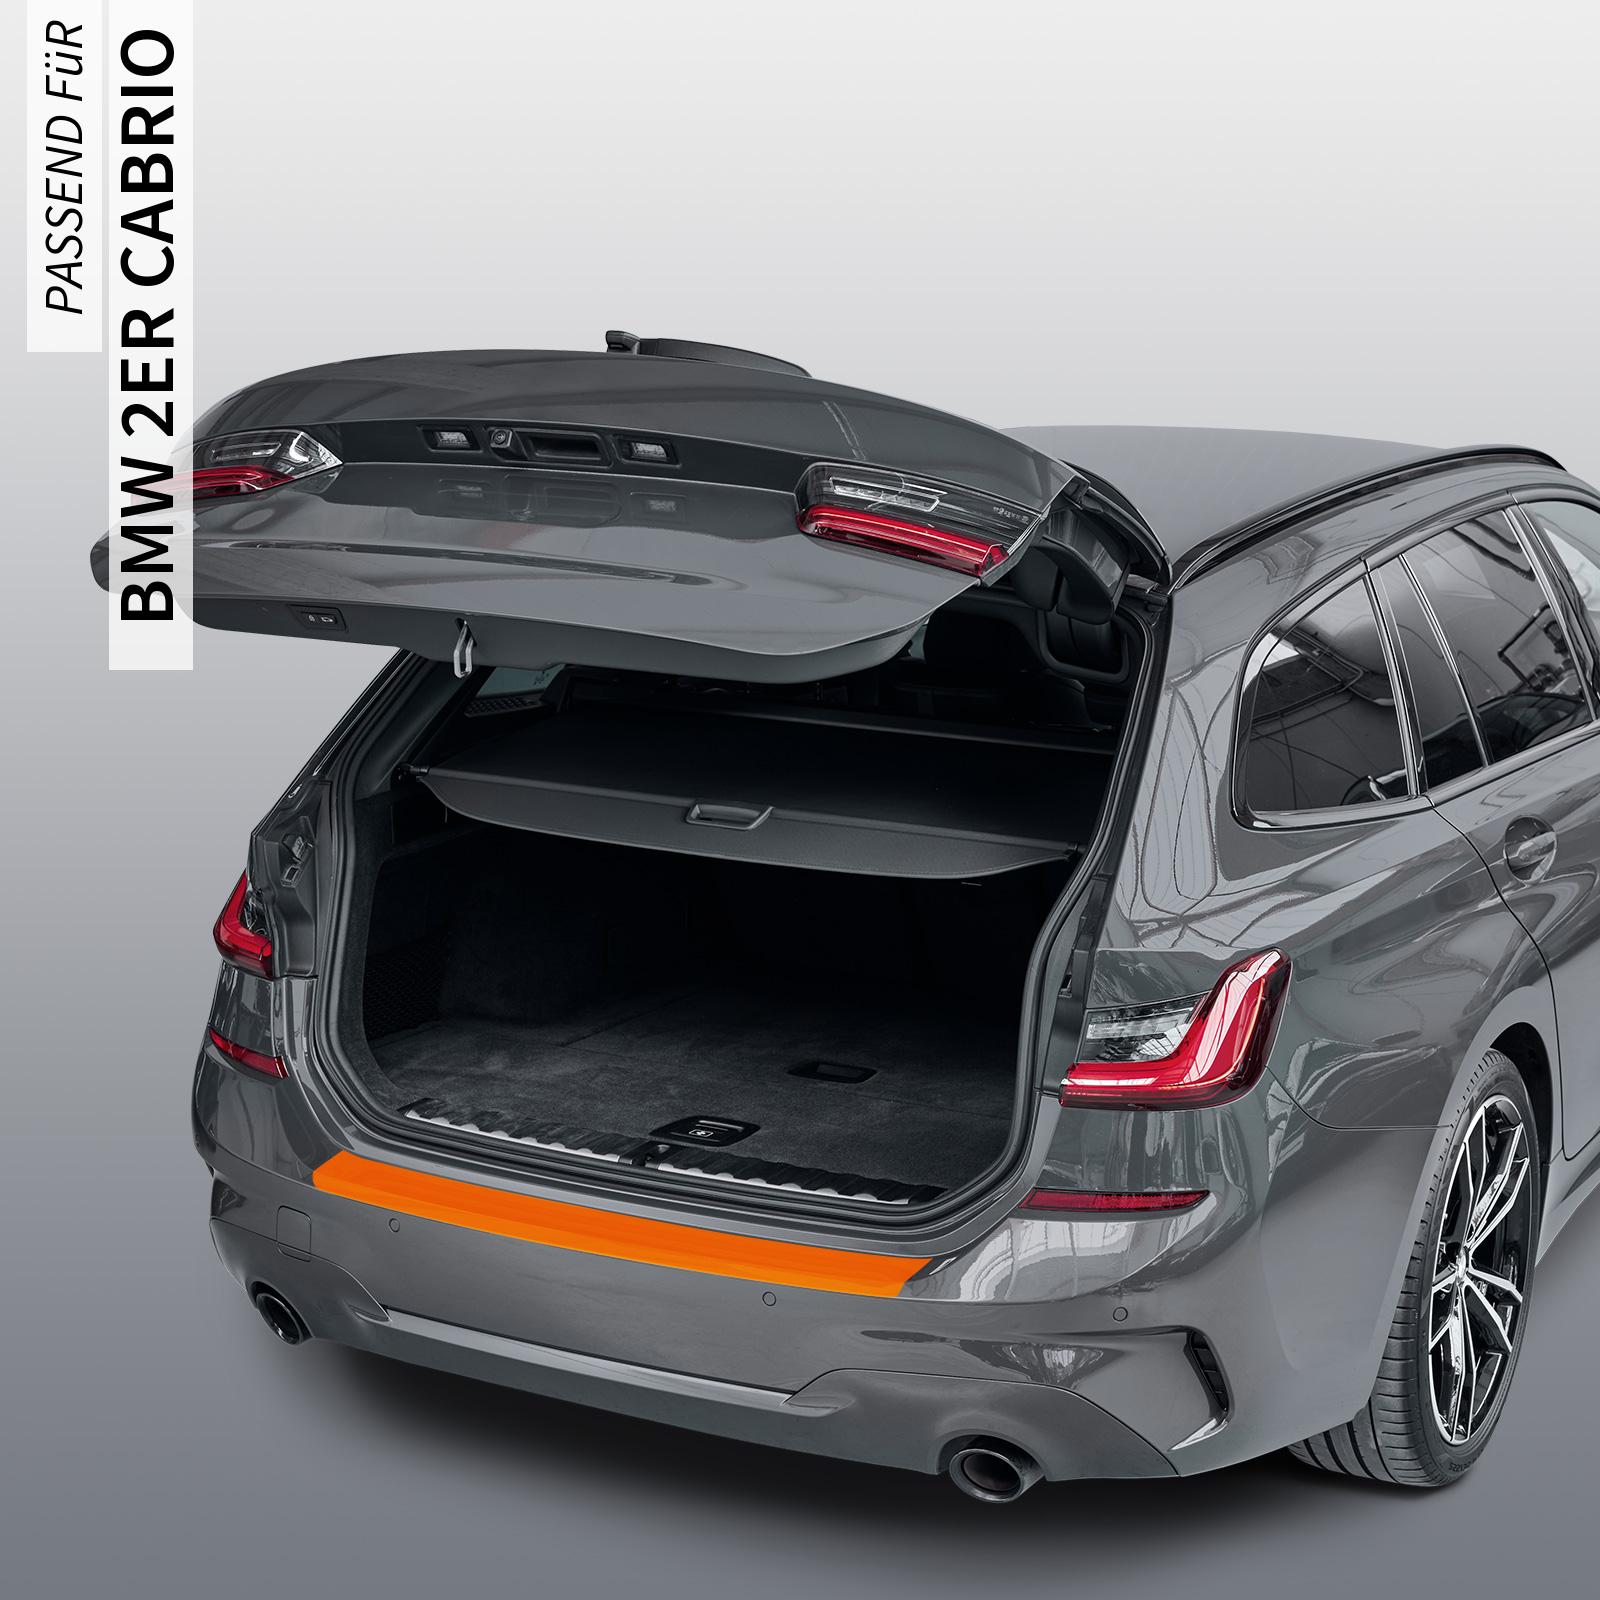 Ladekantenschutzfolie - Transparent Glatt MATT 110 µm stark  für BMW 2er Cabrio Typ F23, BJ 09/2014-2021